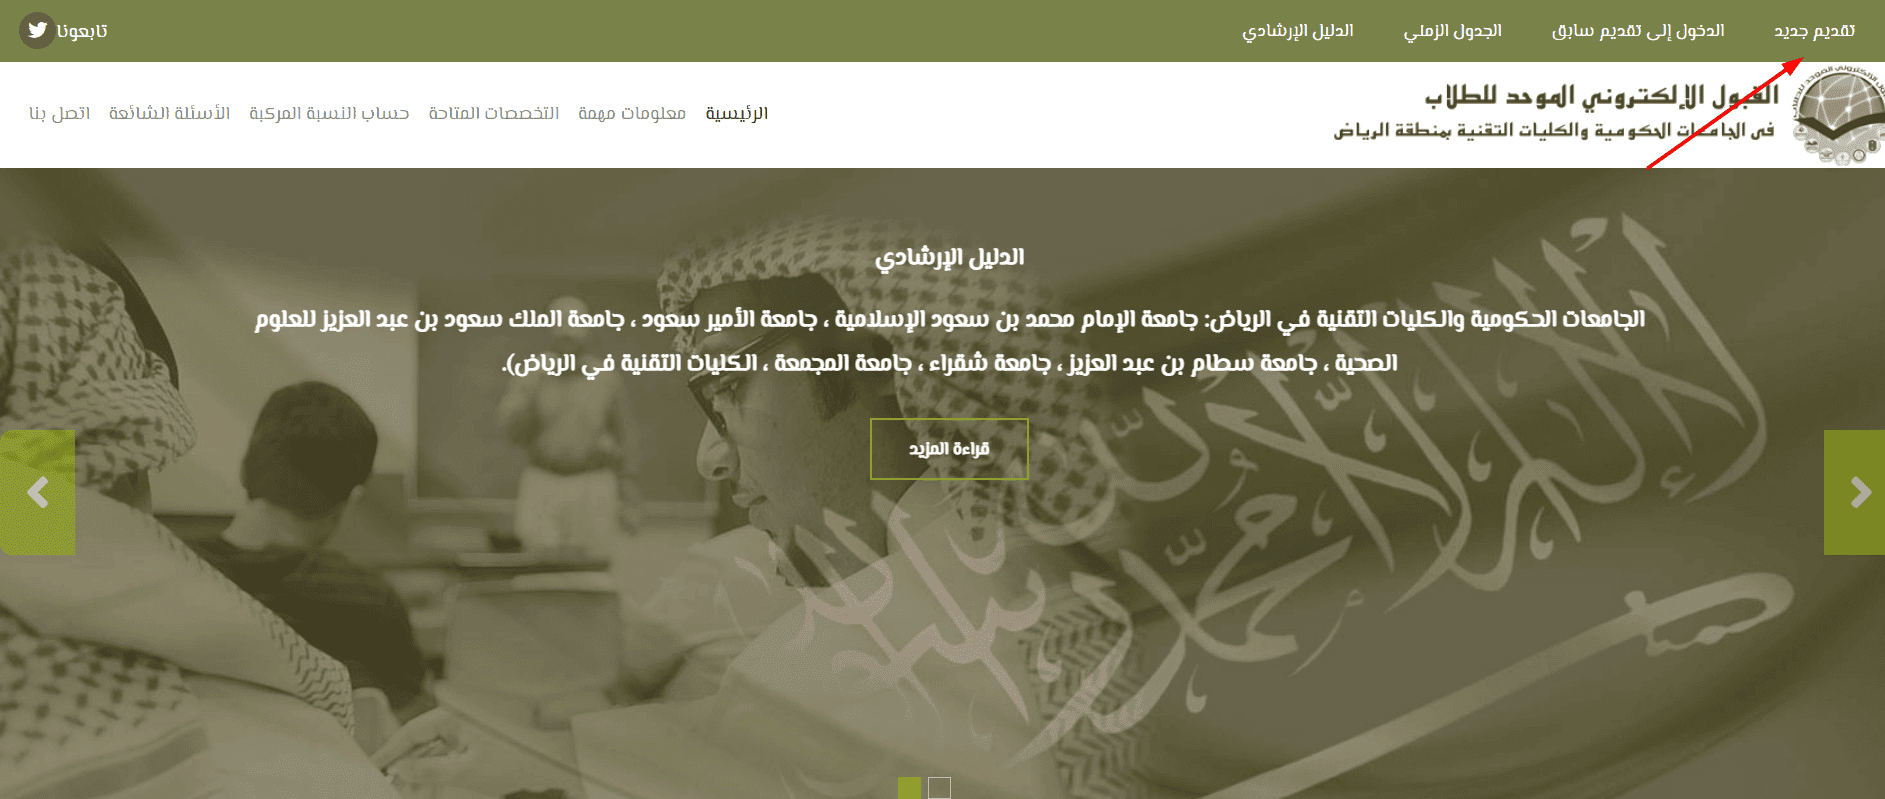  القبول الالكتروني الموحد للطلاب بالسعودية